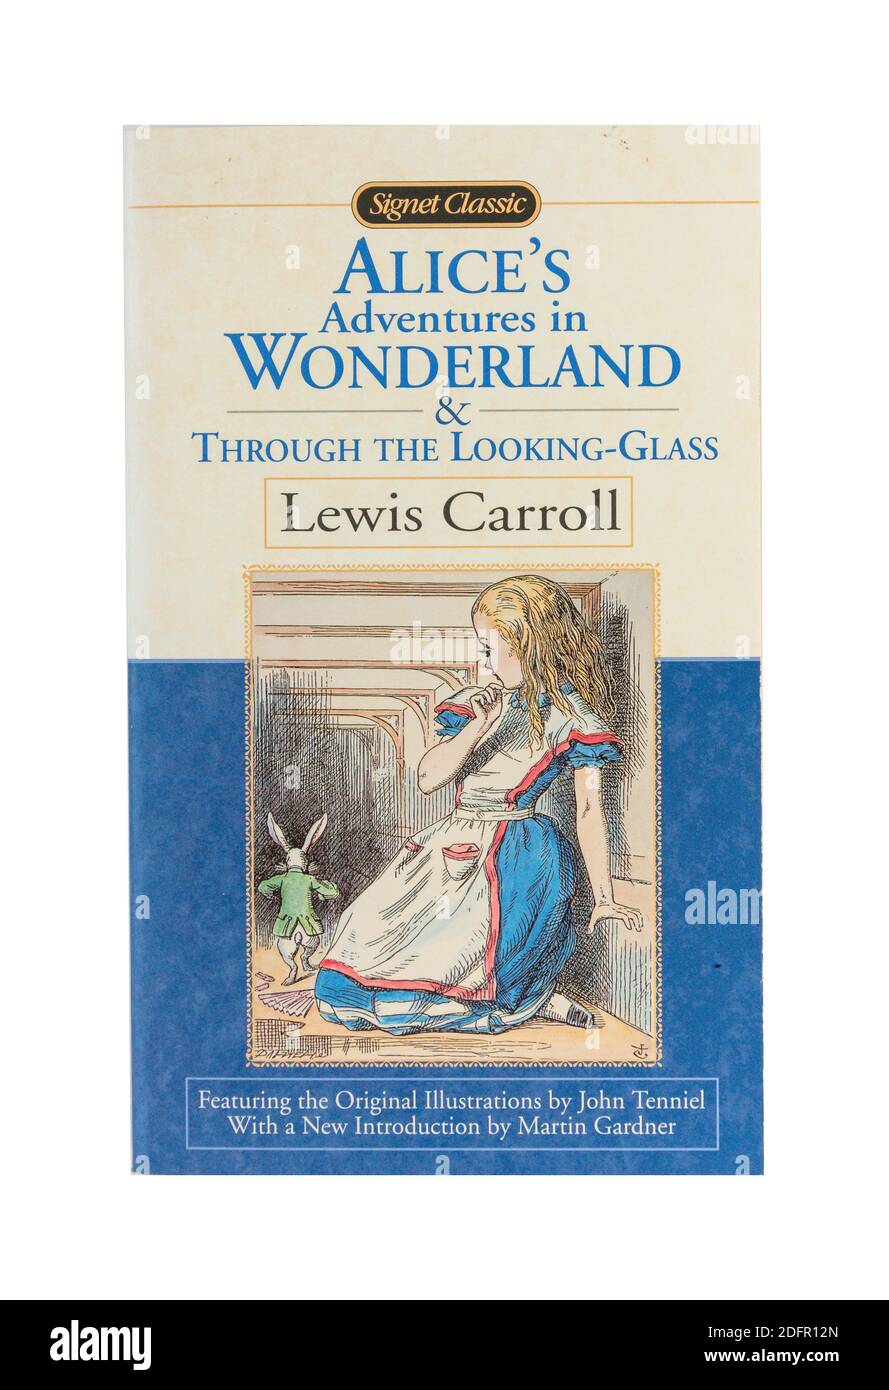 Alice's Adventures in Wonderland et Through the look-Glass, livre pour enfants de Lewis Carroll, Greater London, Angleterre, royaume-uni Banque D'Images